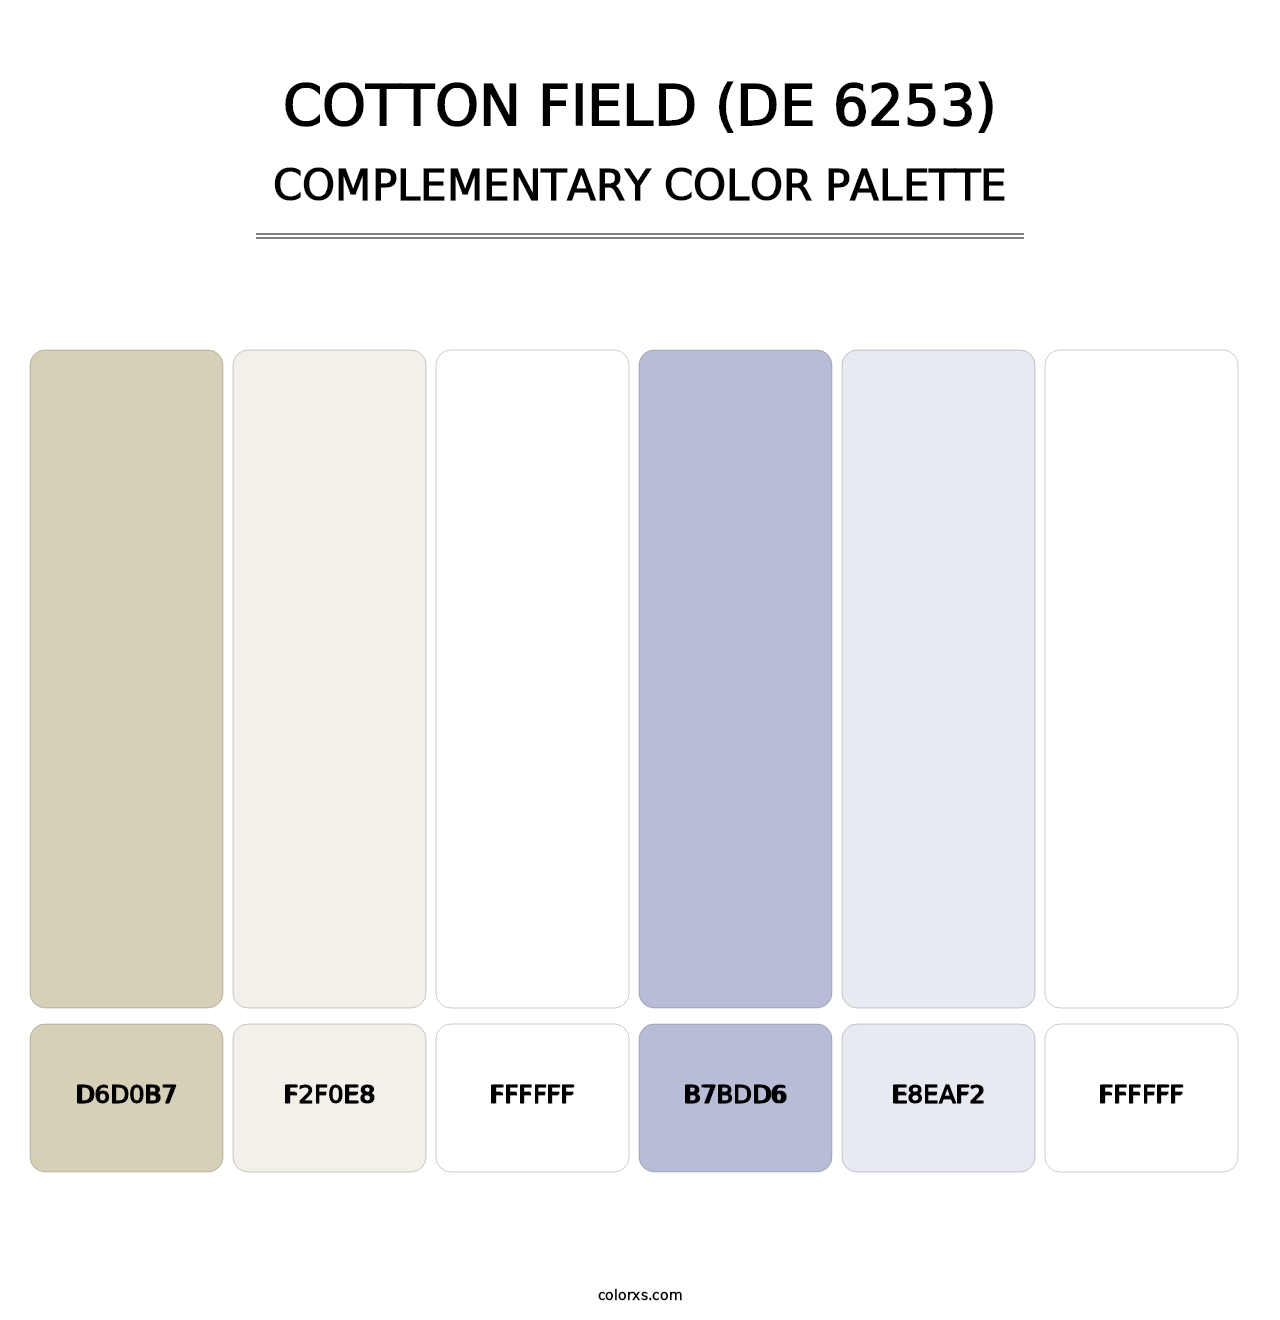 Cotton Field (DE 6253) - Complementary Color Palette